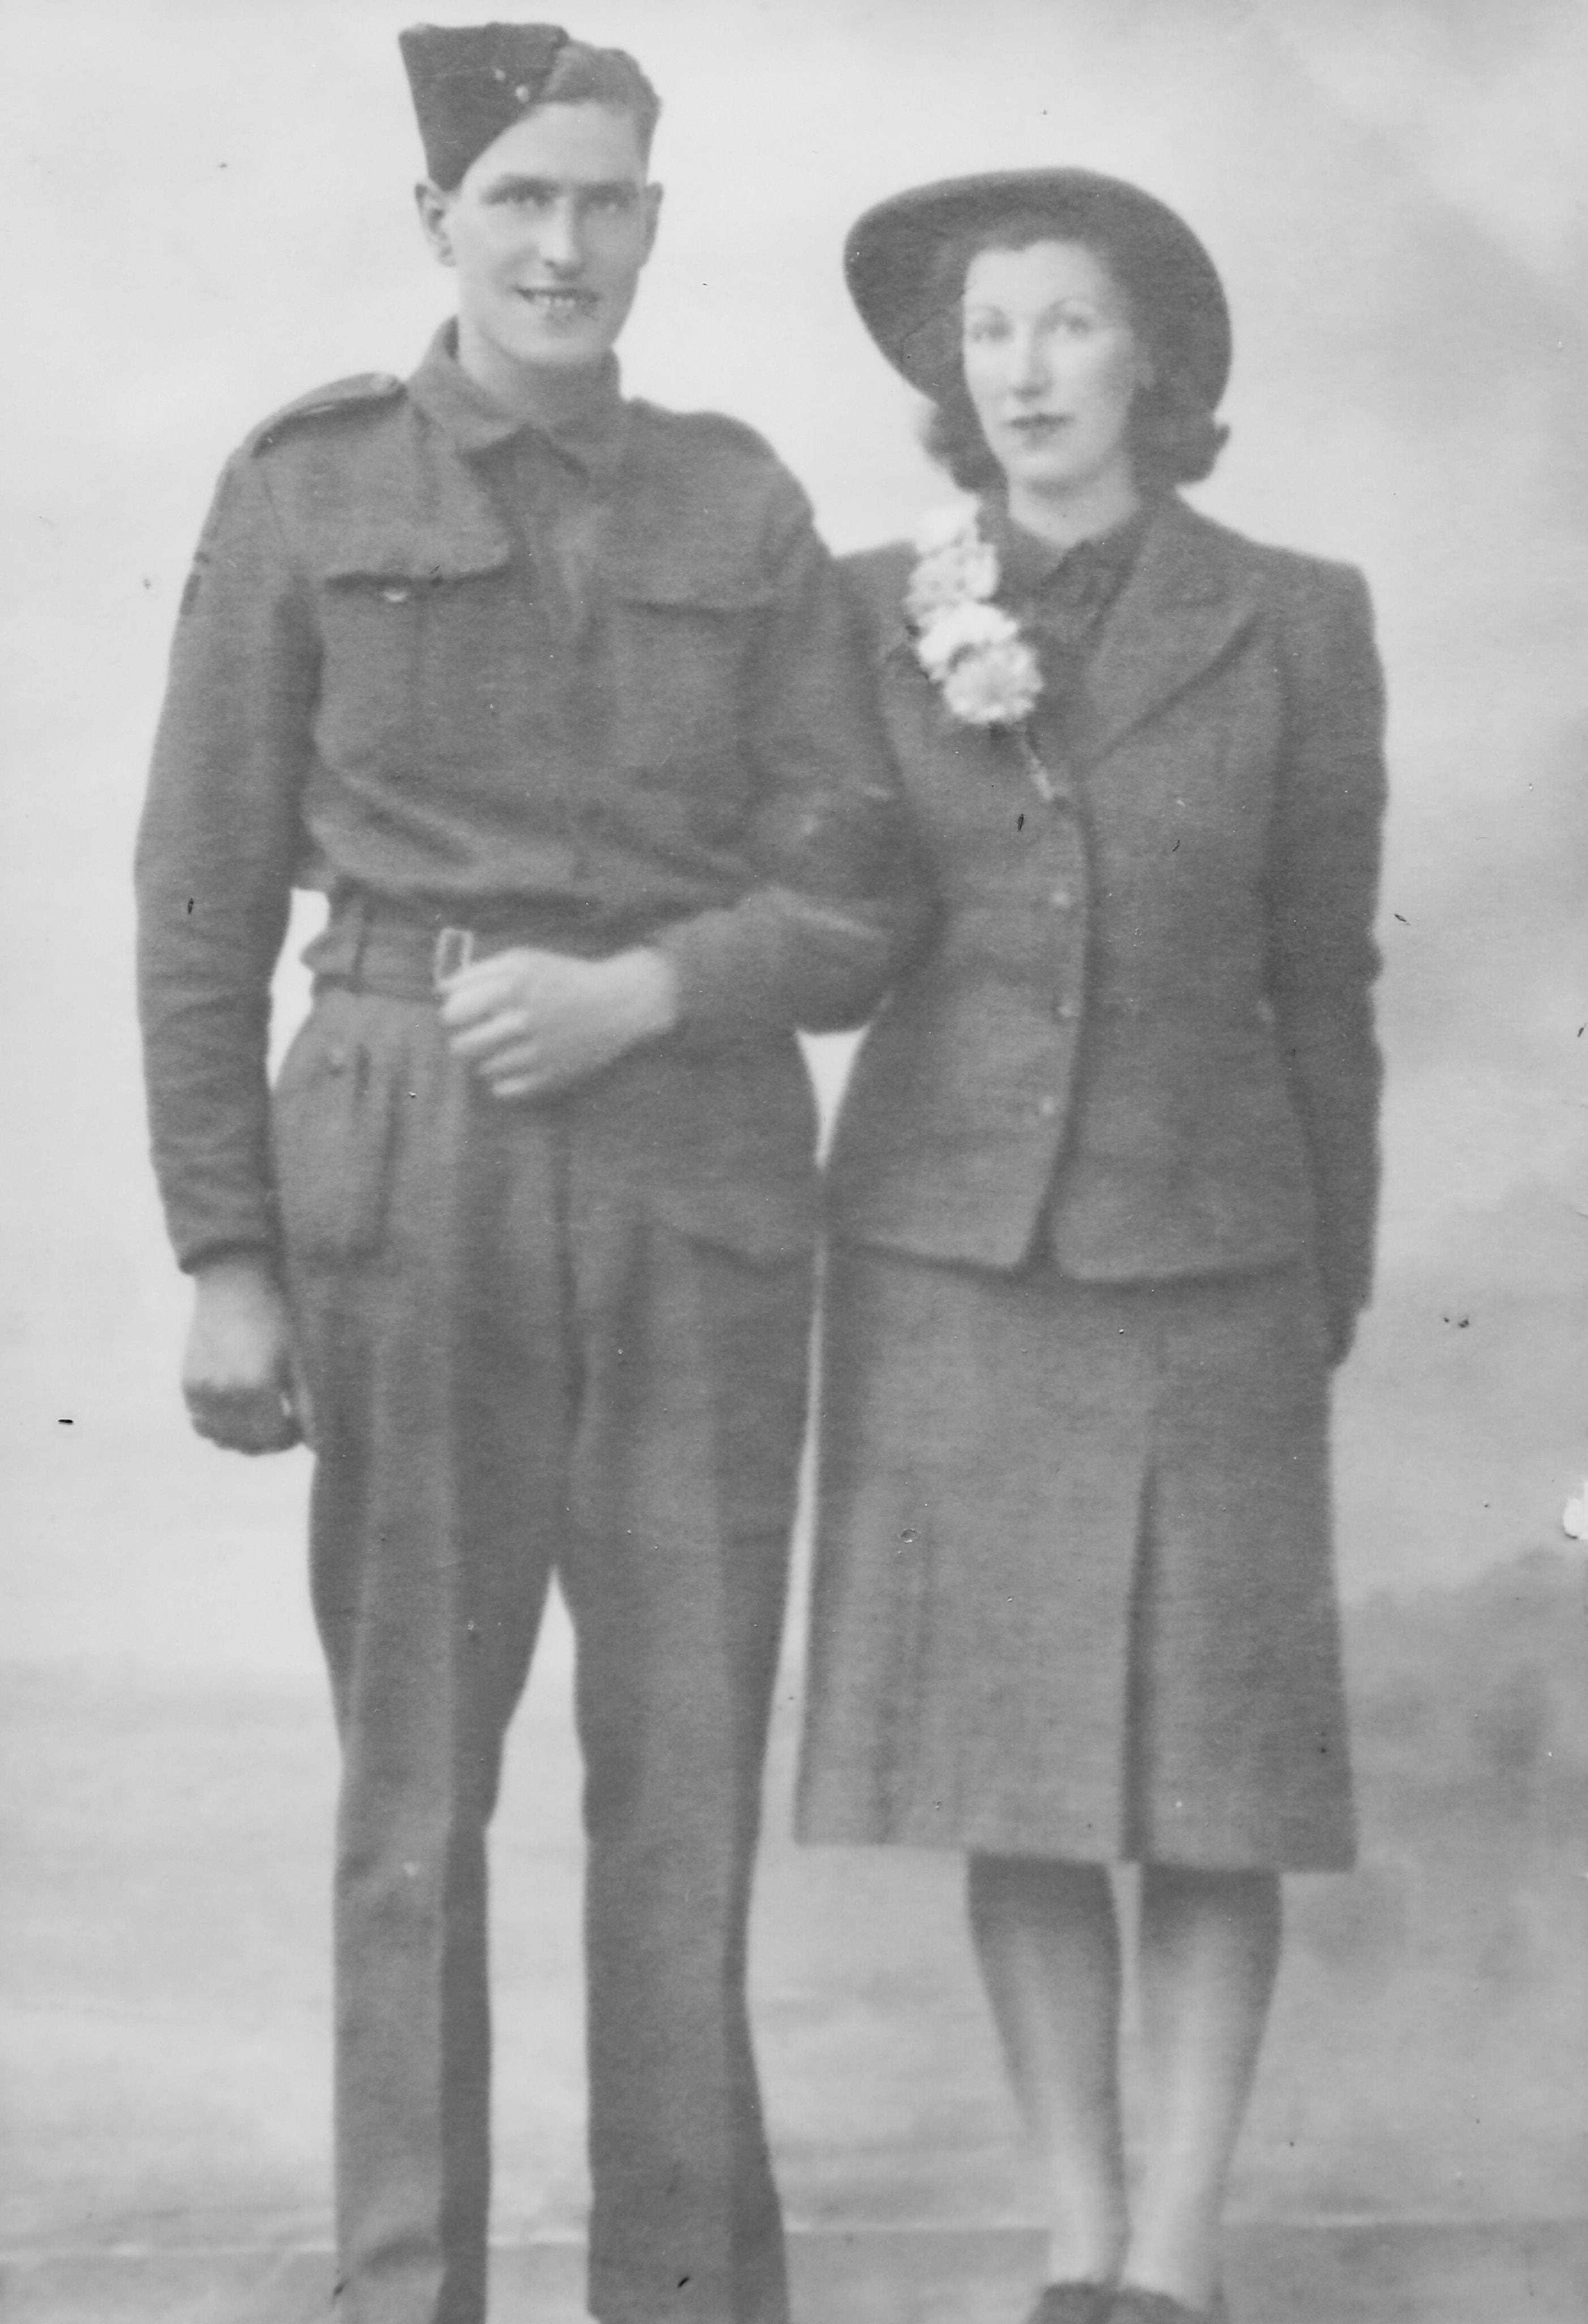 Ivor aged 22 with his wife Violet. Ivor Gardner